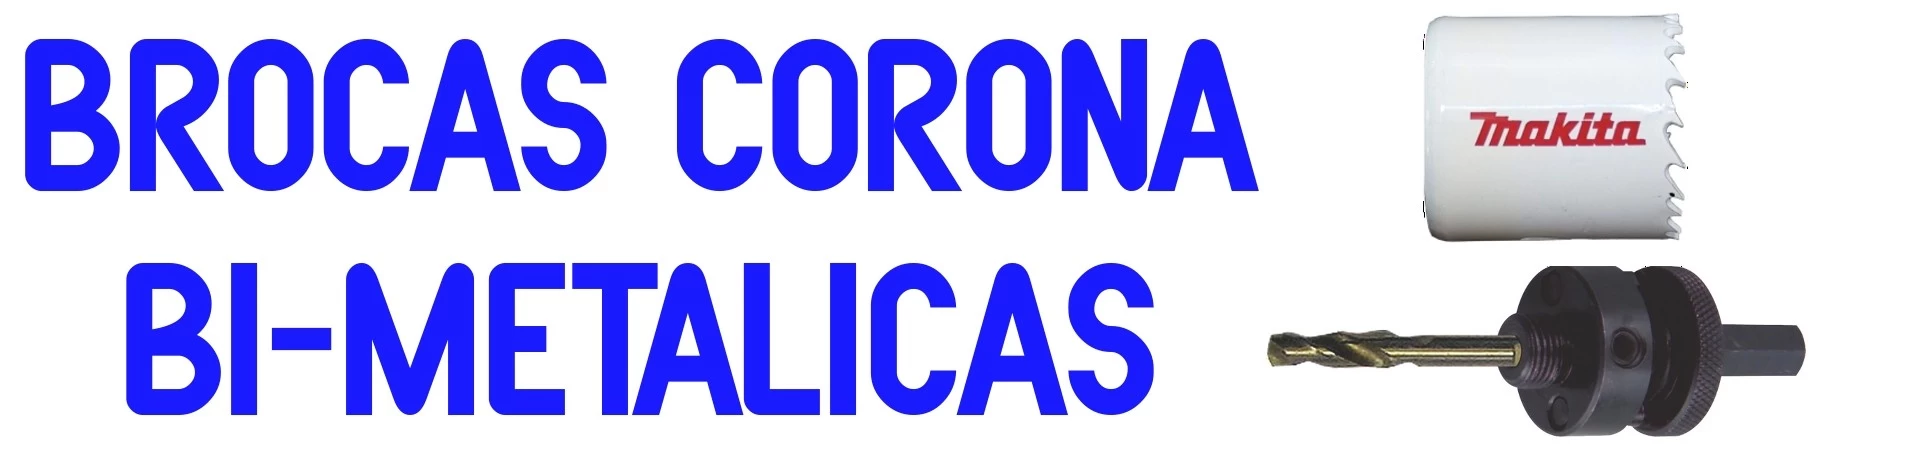 BROCAS de Corona BiMetálicas Makita para Acero, Hierro, Metal, Madera y Plásticos